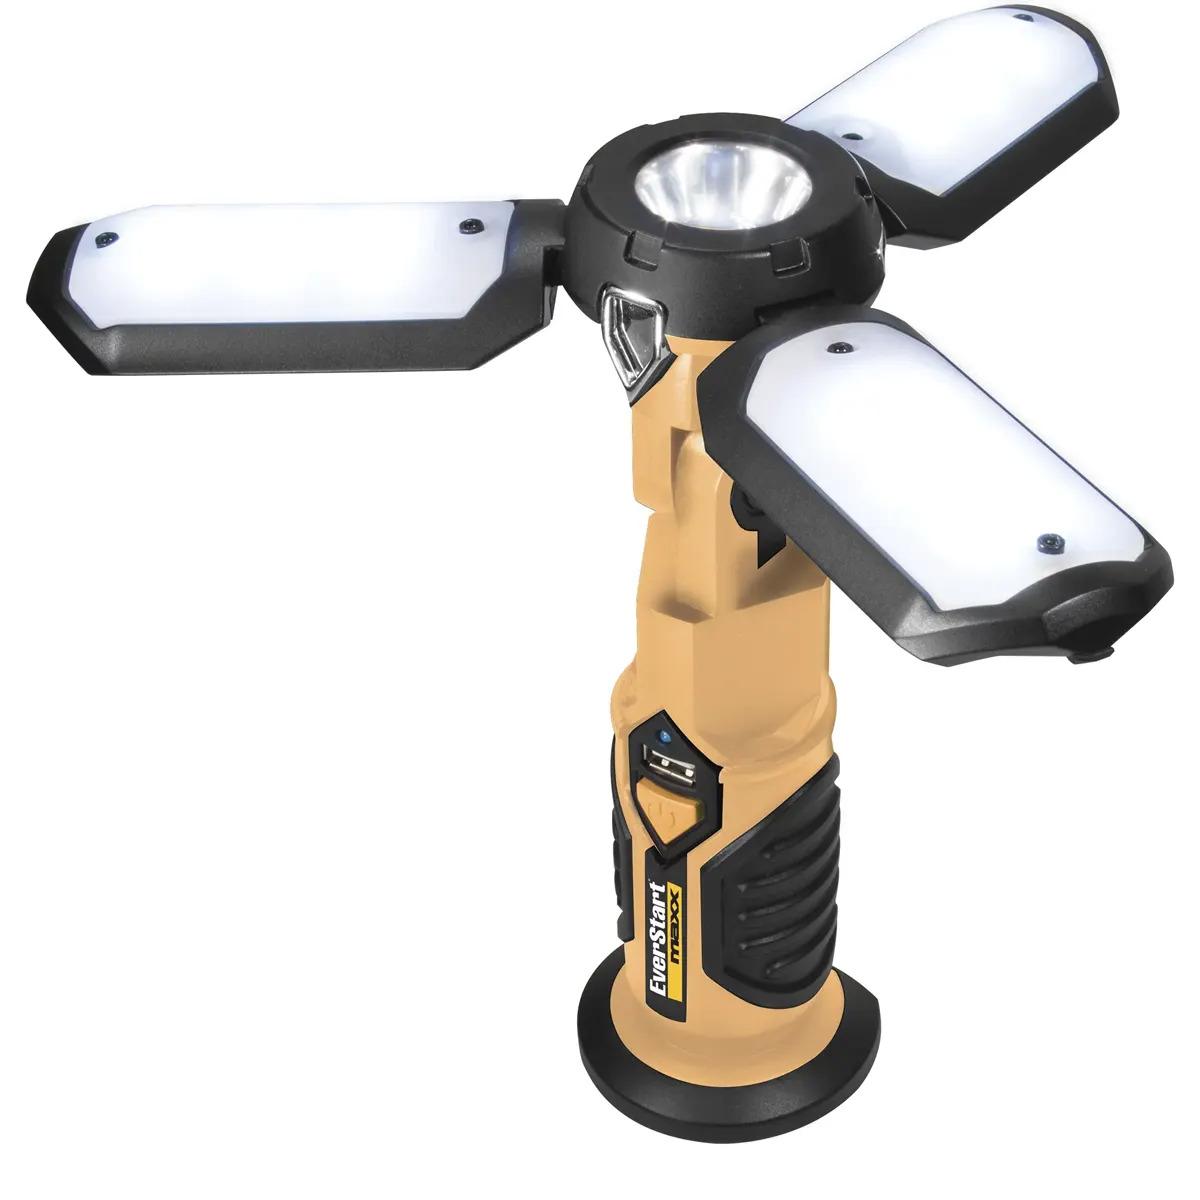 Everstart 600 Lumen Brightness LED Portable Folding Work Light for $10